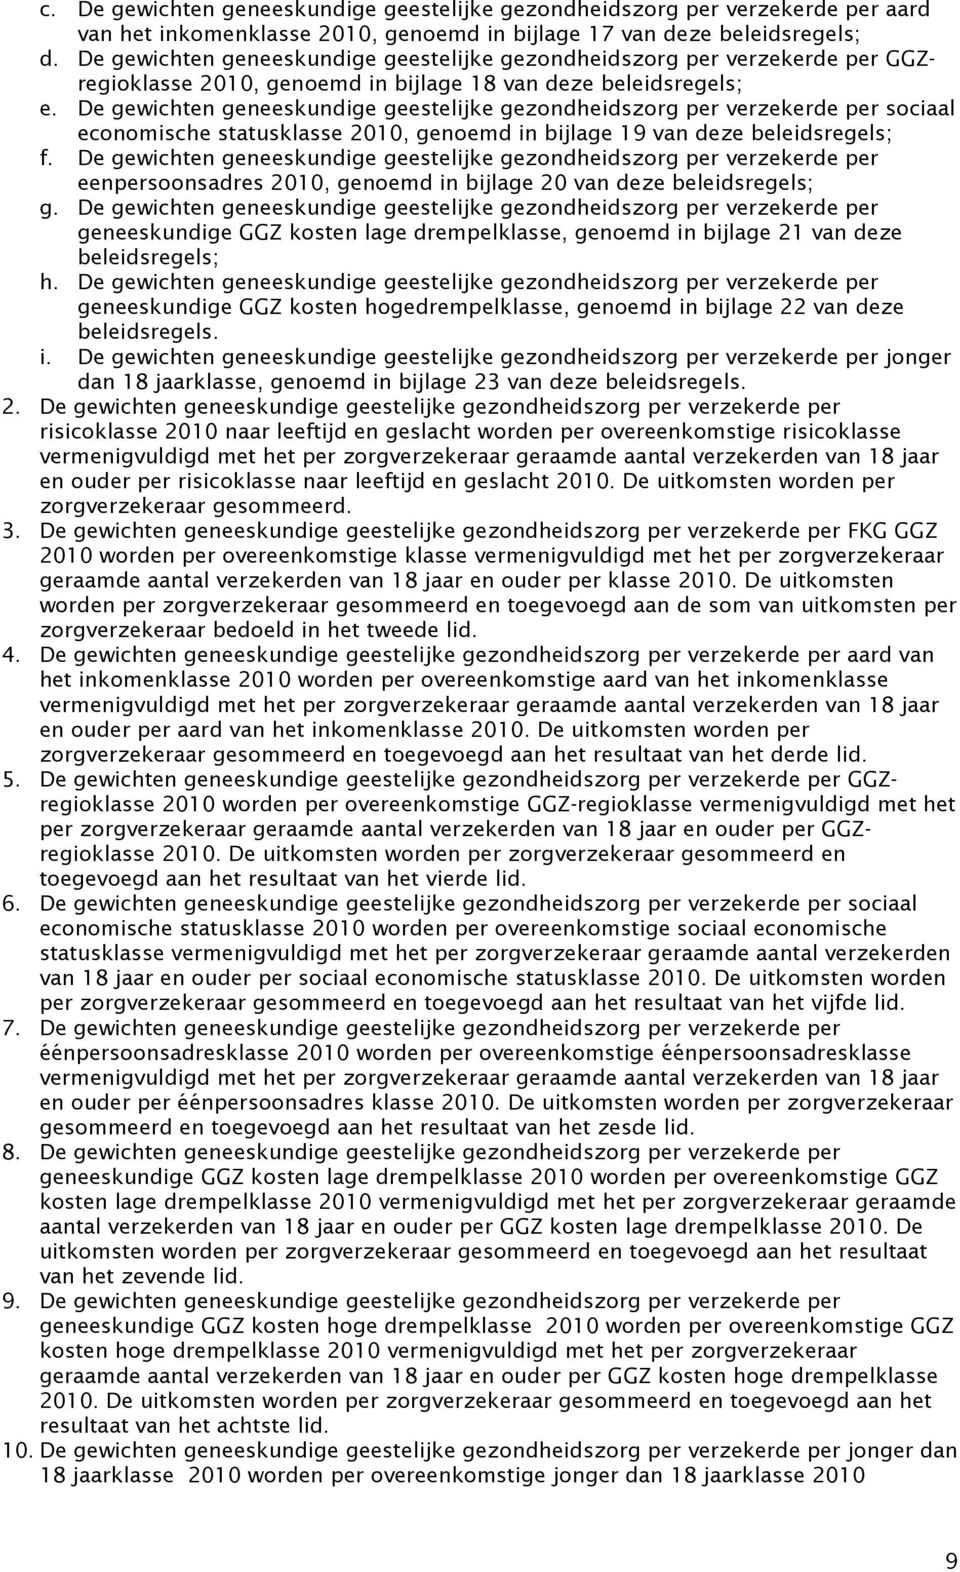 De gewichten geneeskundige geestelijke gezondheidszorg per verzekerde per sociaal economische statusklasse 2010, genoemd in bijlage 19 van deze beleidsregels; f.